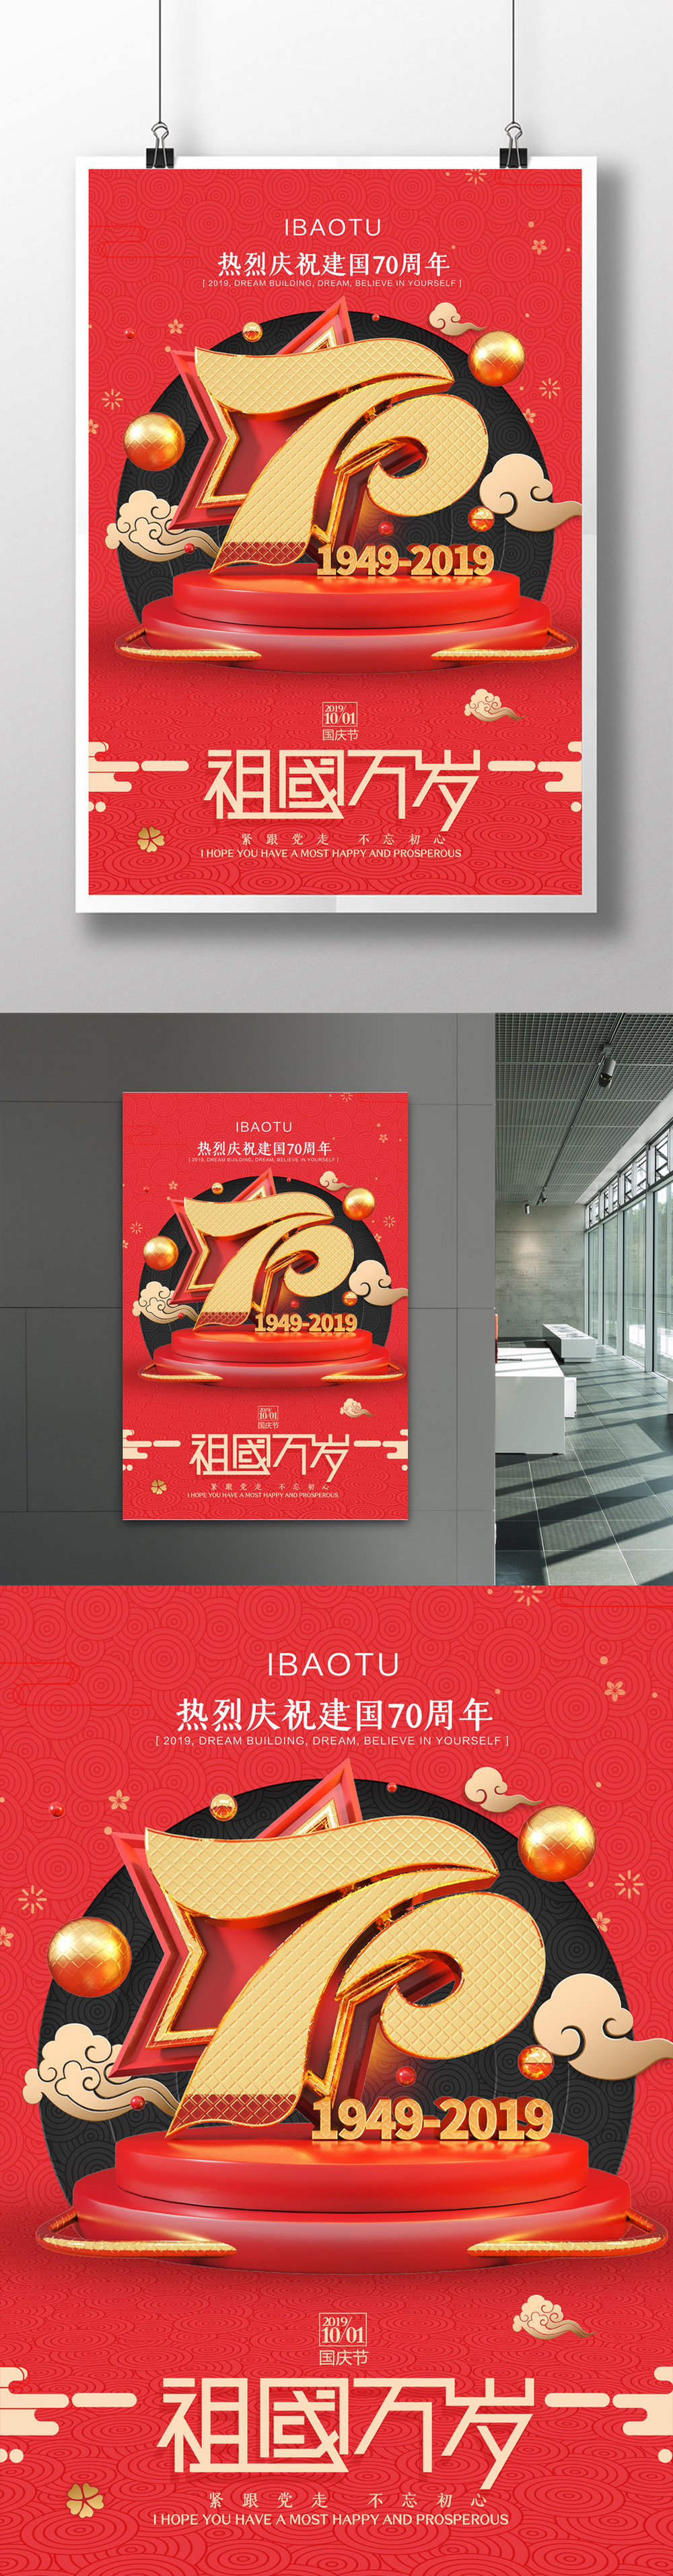 简约喜庆建国70周年纪念日国庆节海报